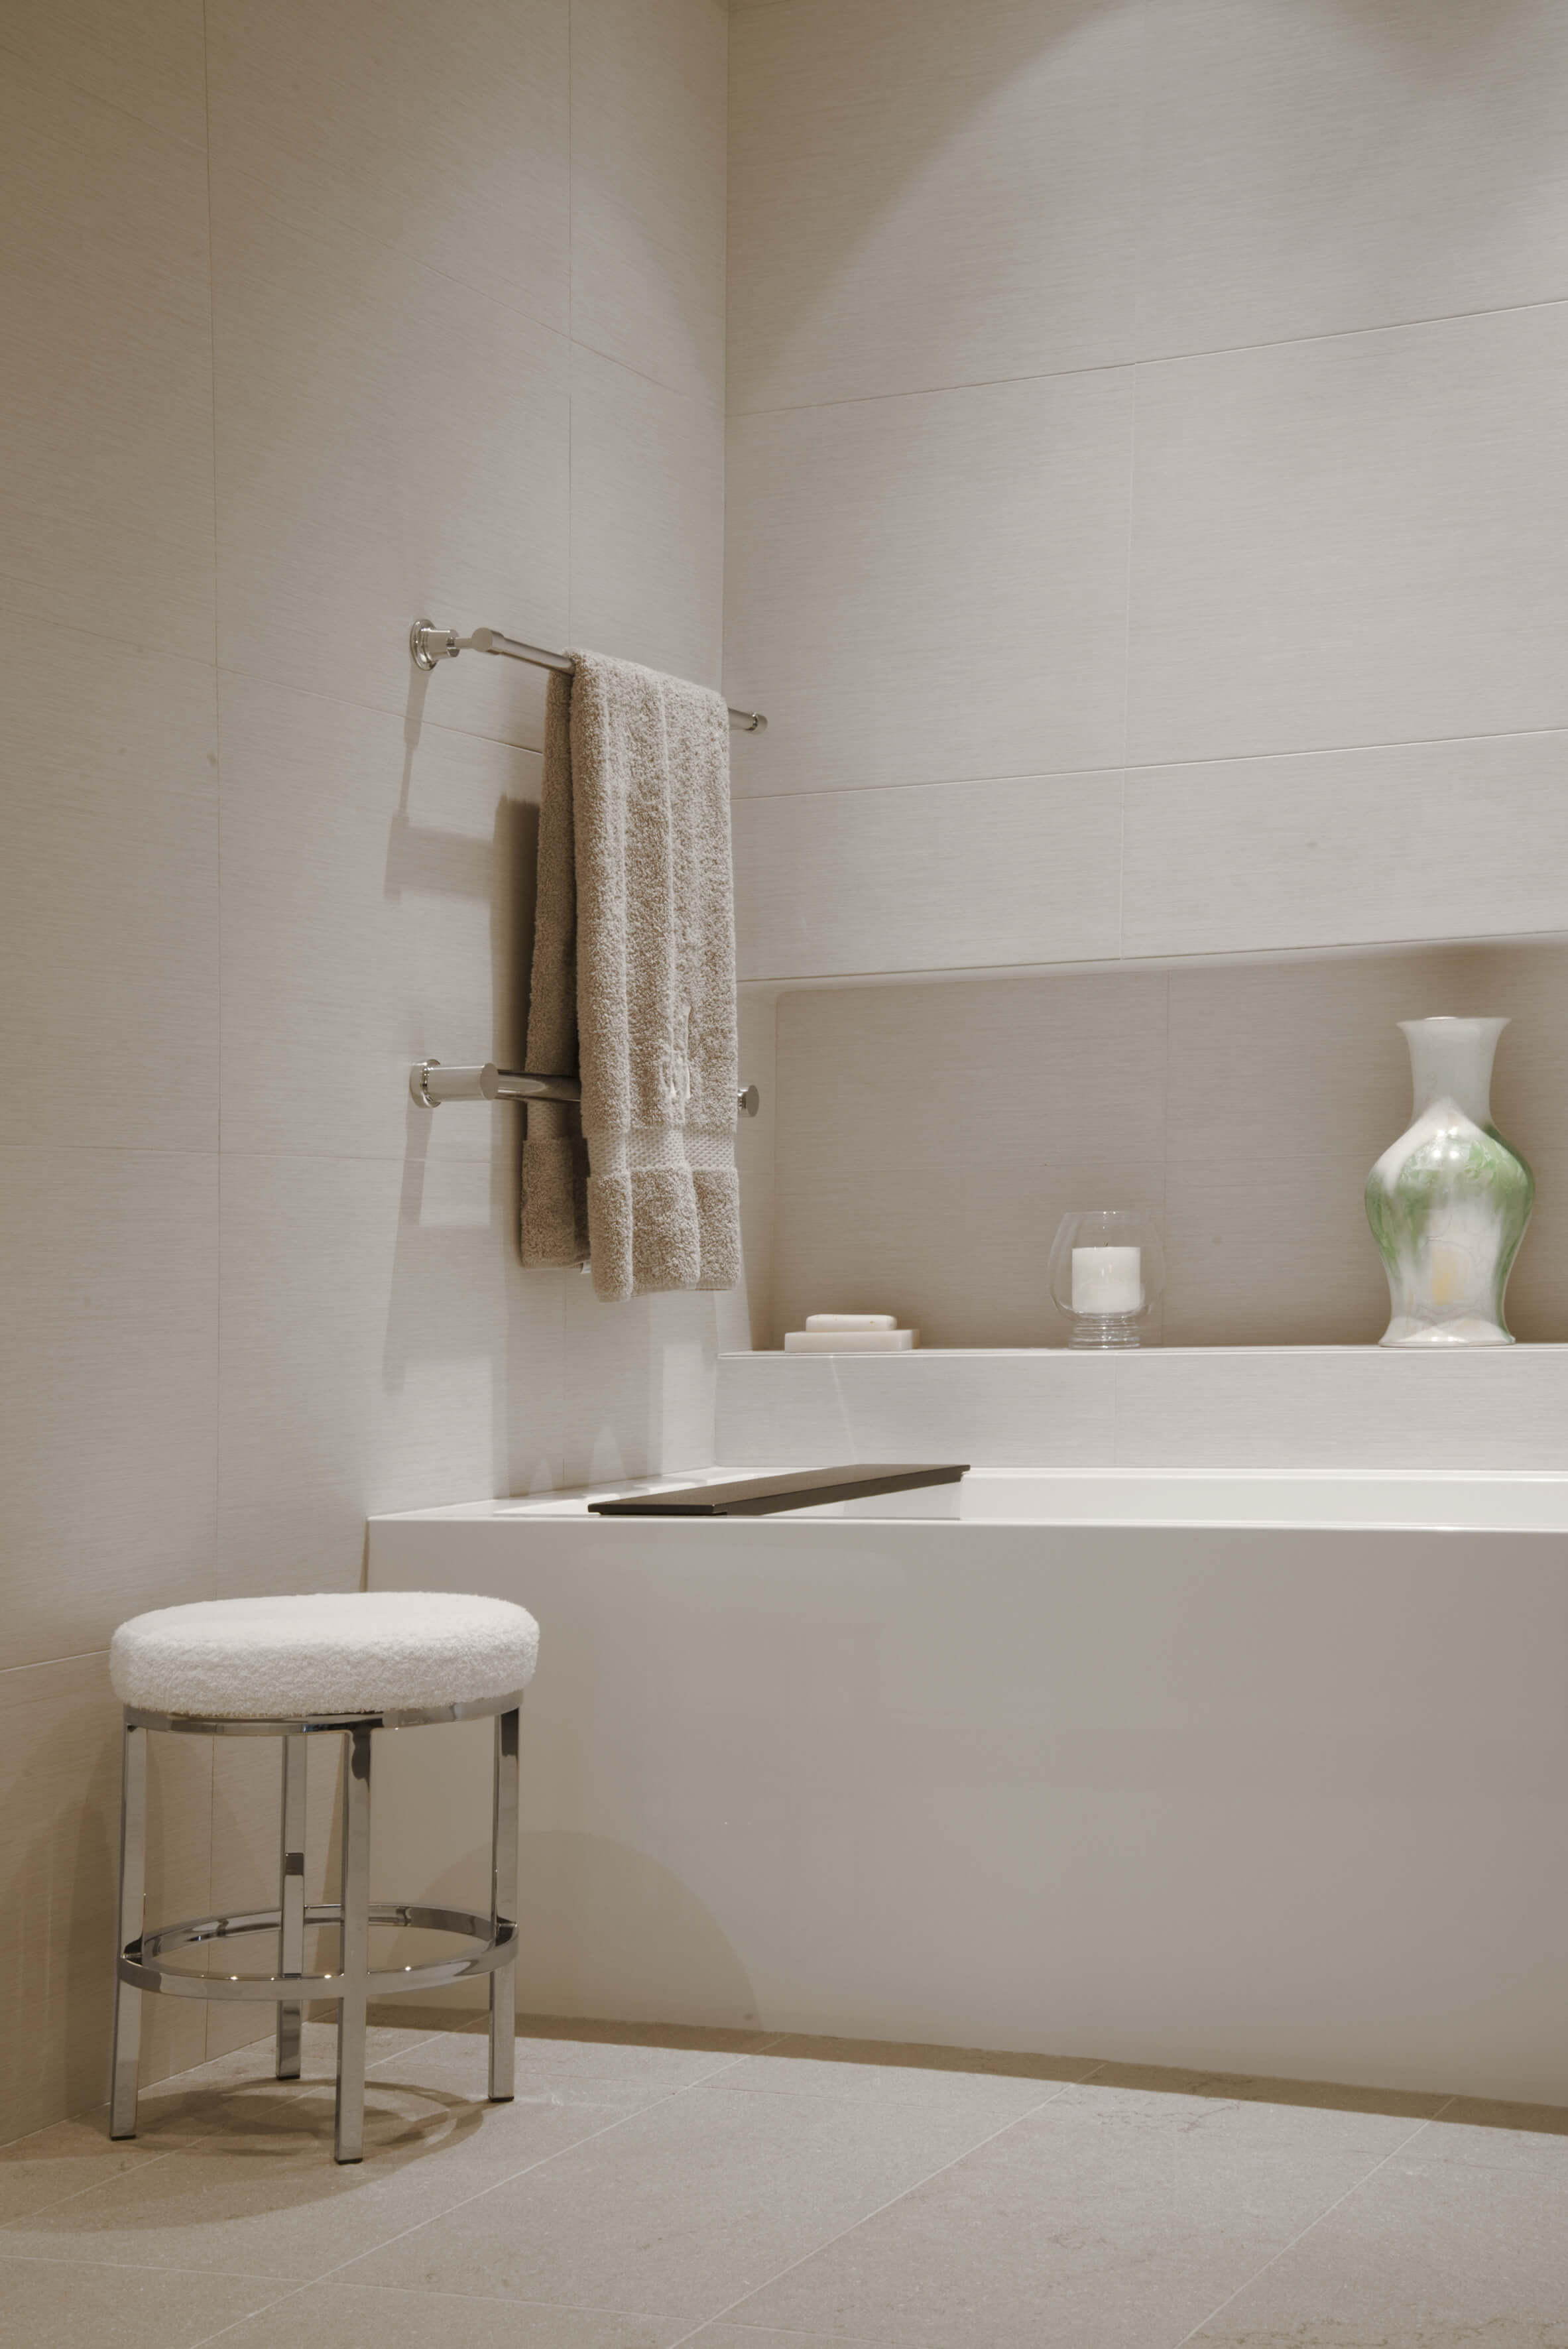 White natural stone bathroom creates calm. Designed by Interior Designer, RM Interiors of Cincinnati, OH.